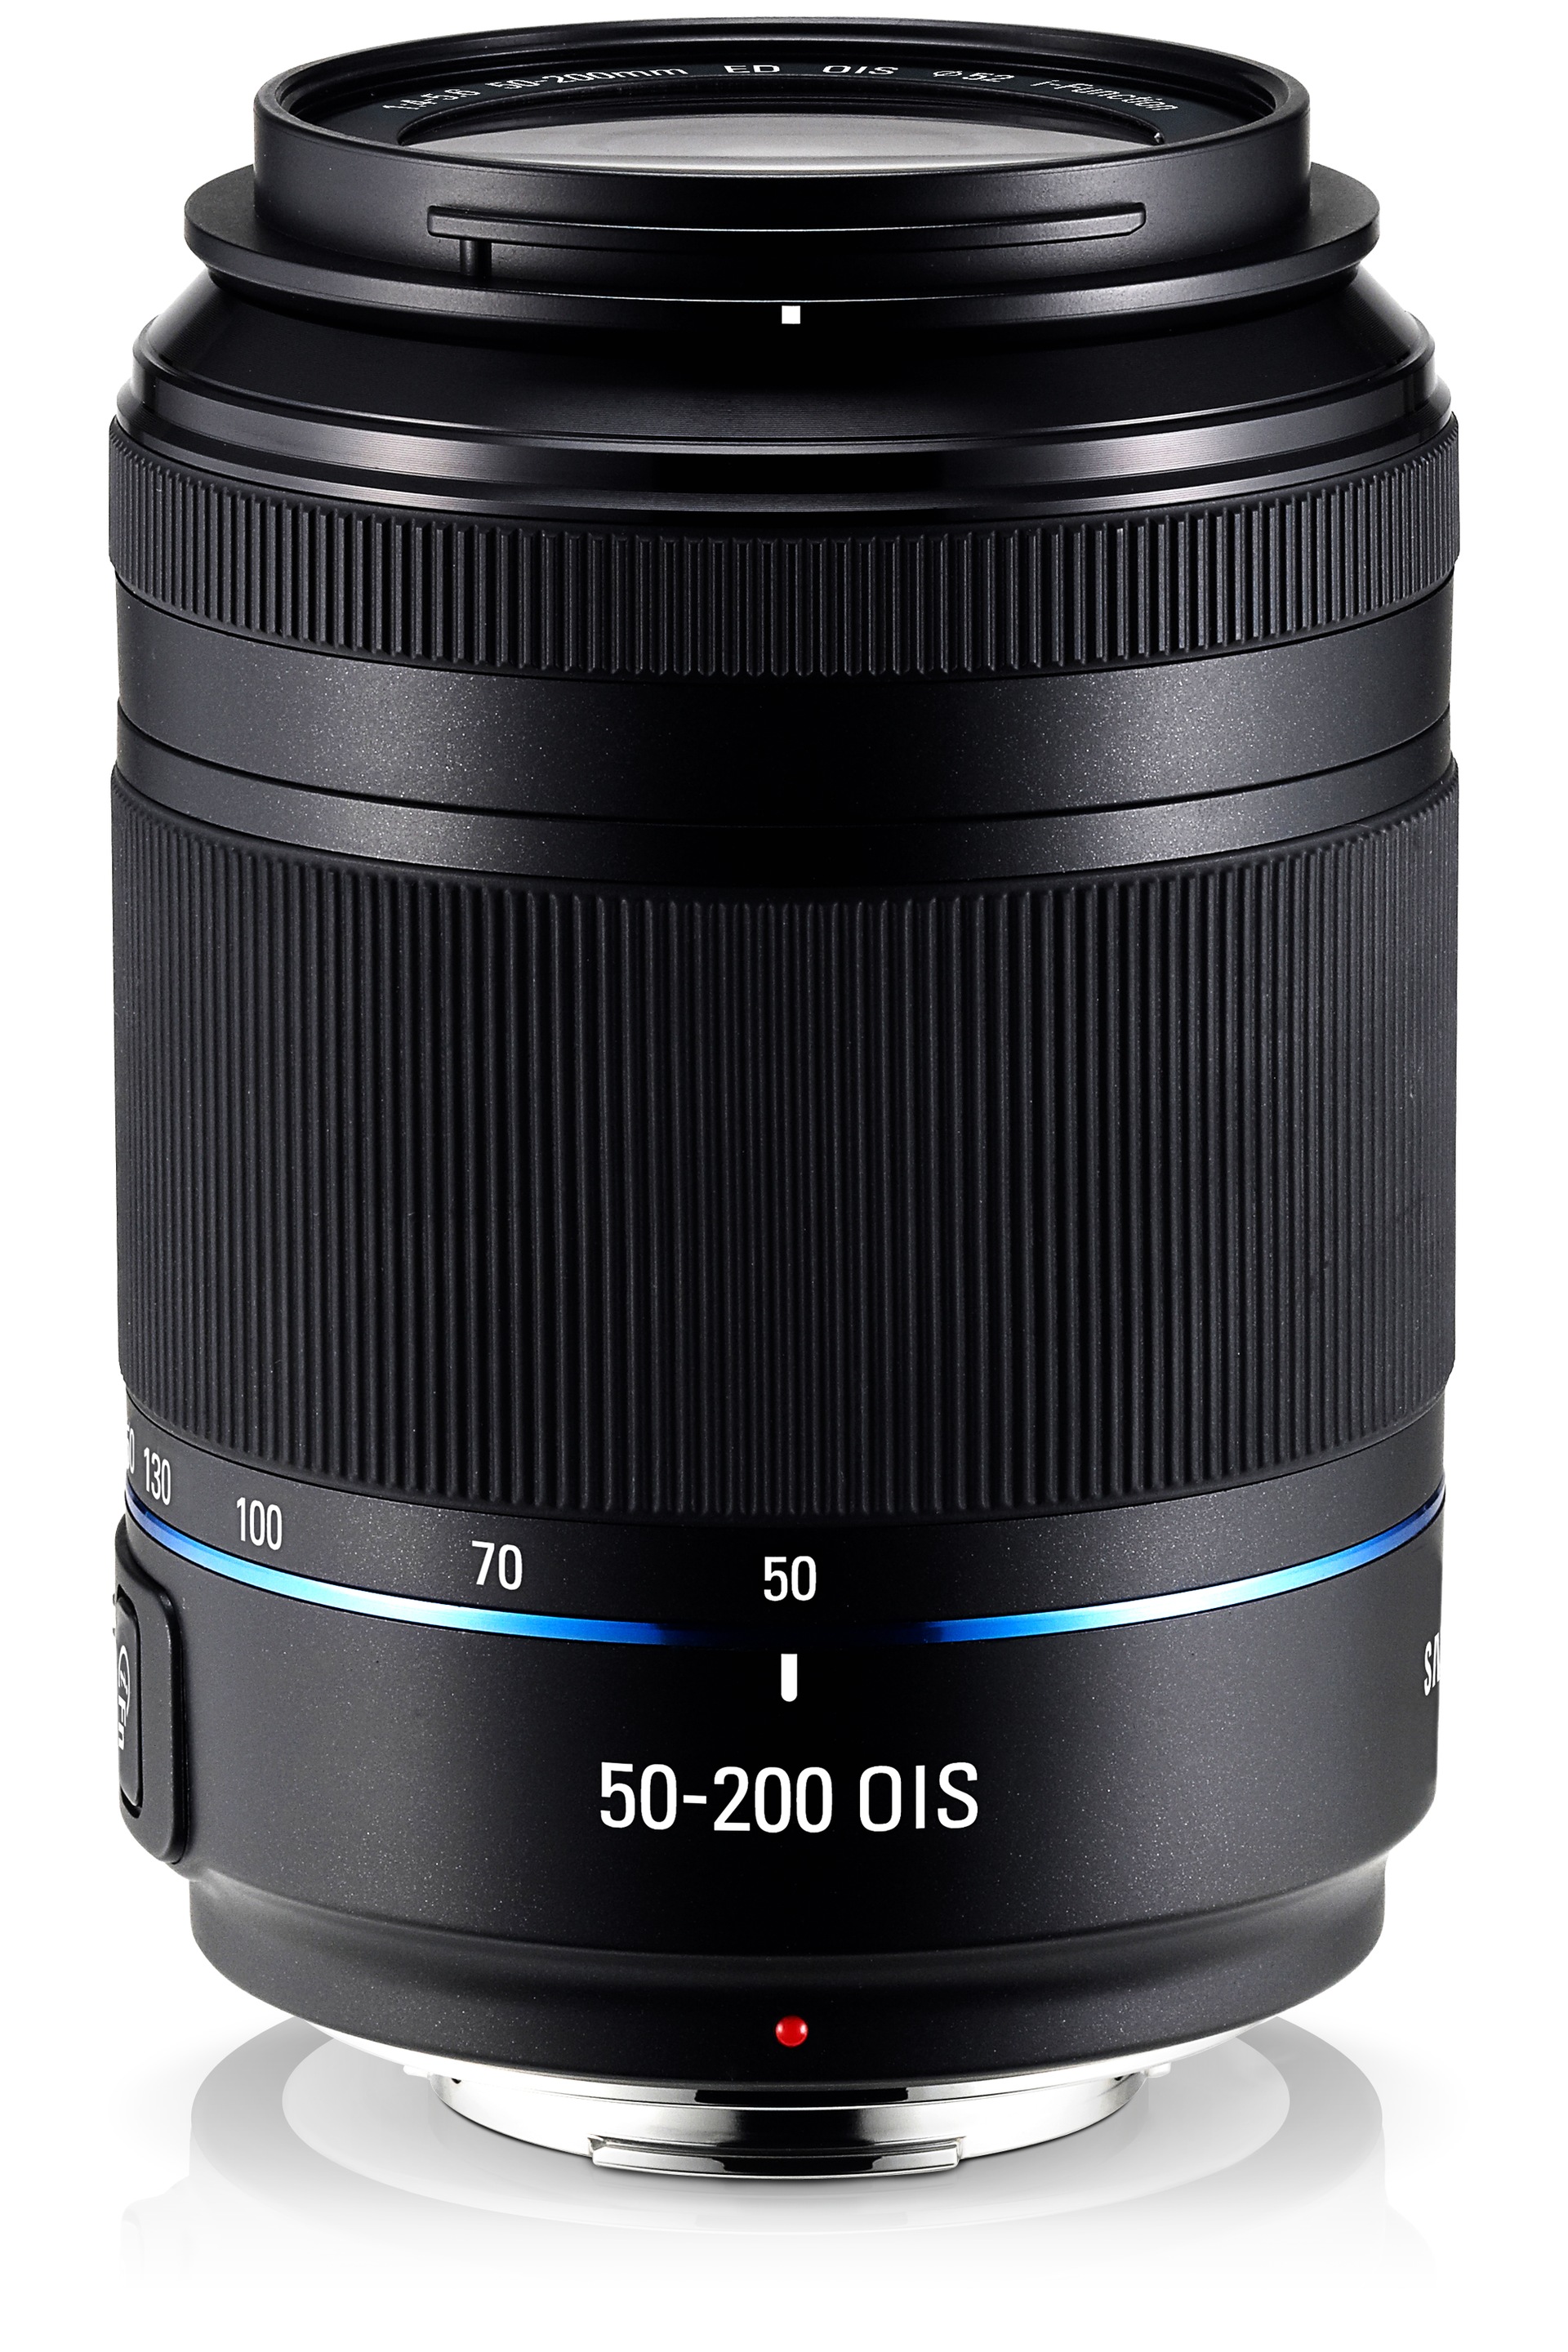 HCM - Bán ống kính Samsung NX 50-200mm chính hãng mới 100% giá rẻ